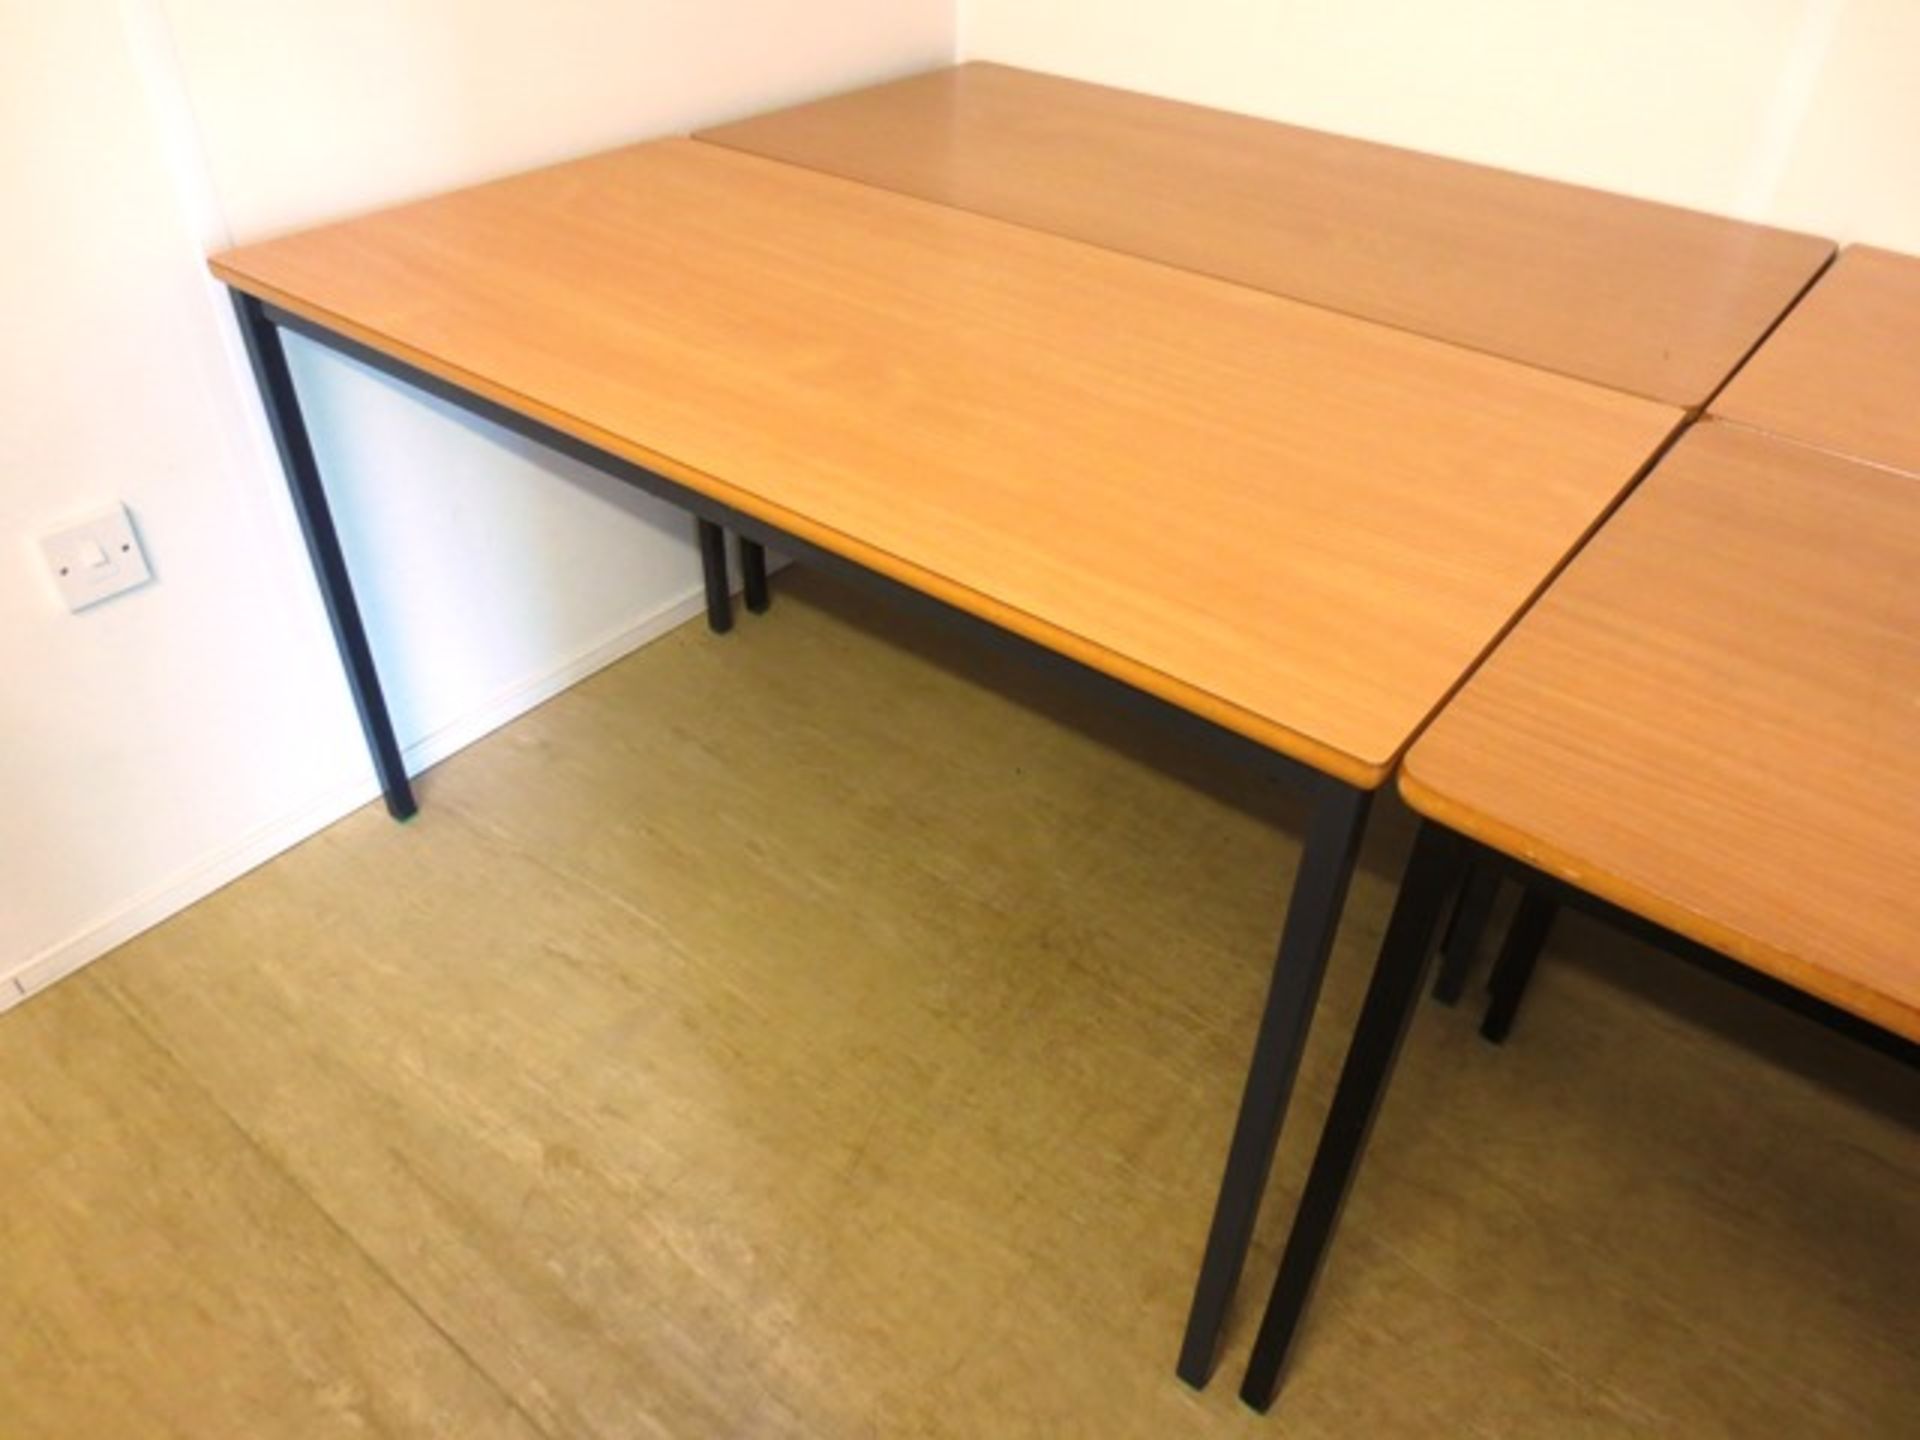 Two light oak effect, steel framed, rectangular work desks (image for illustrative purposes only)